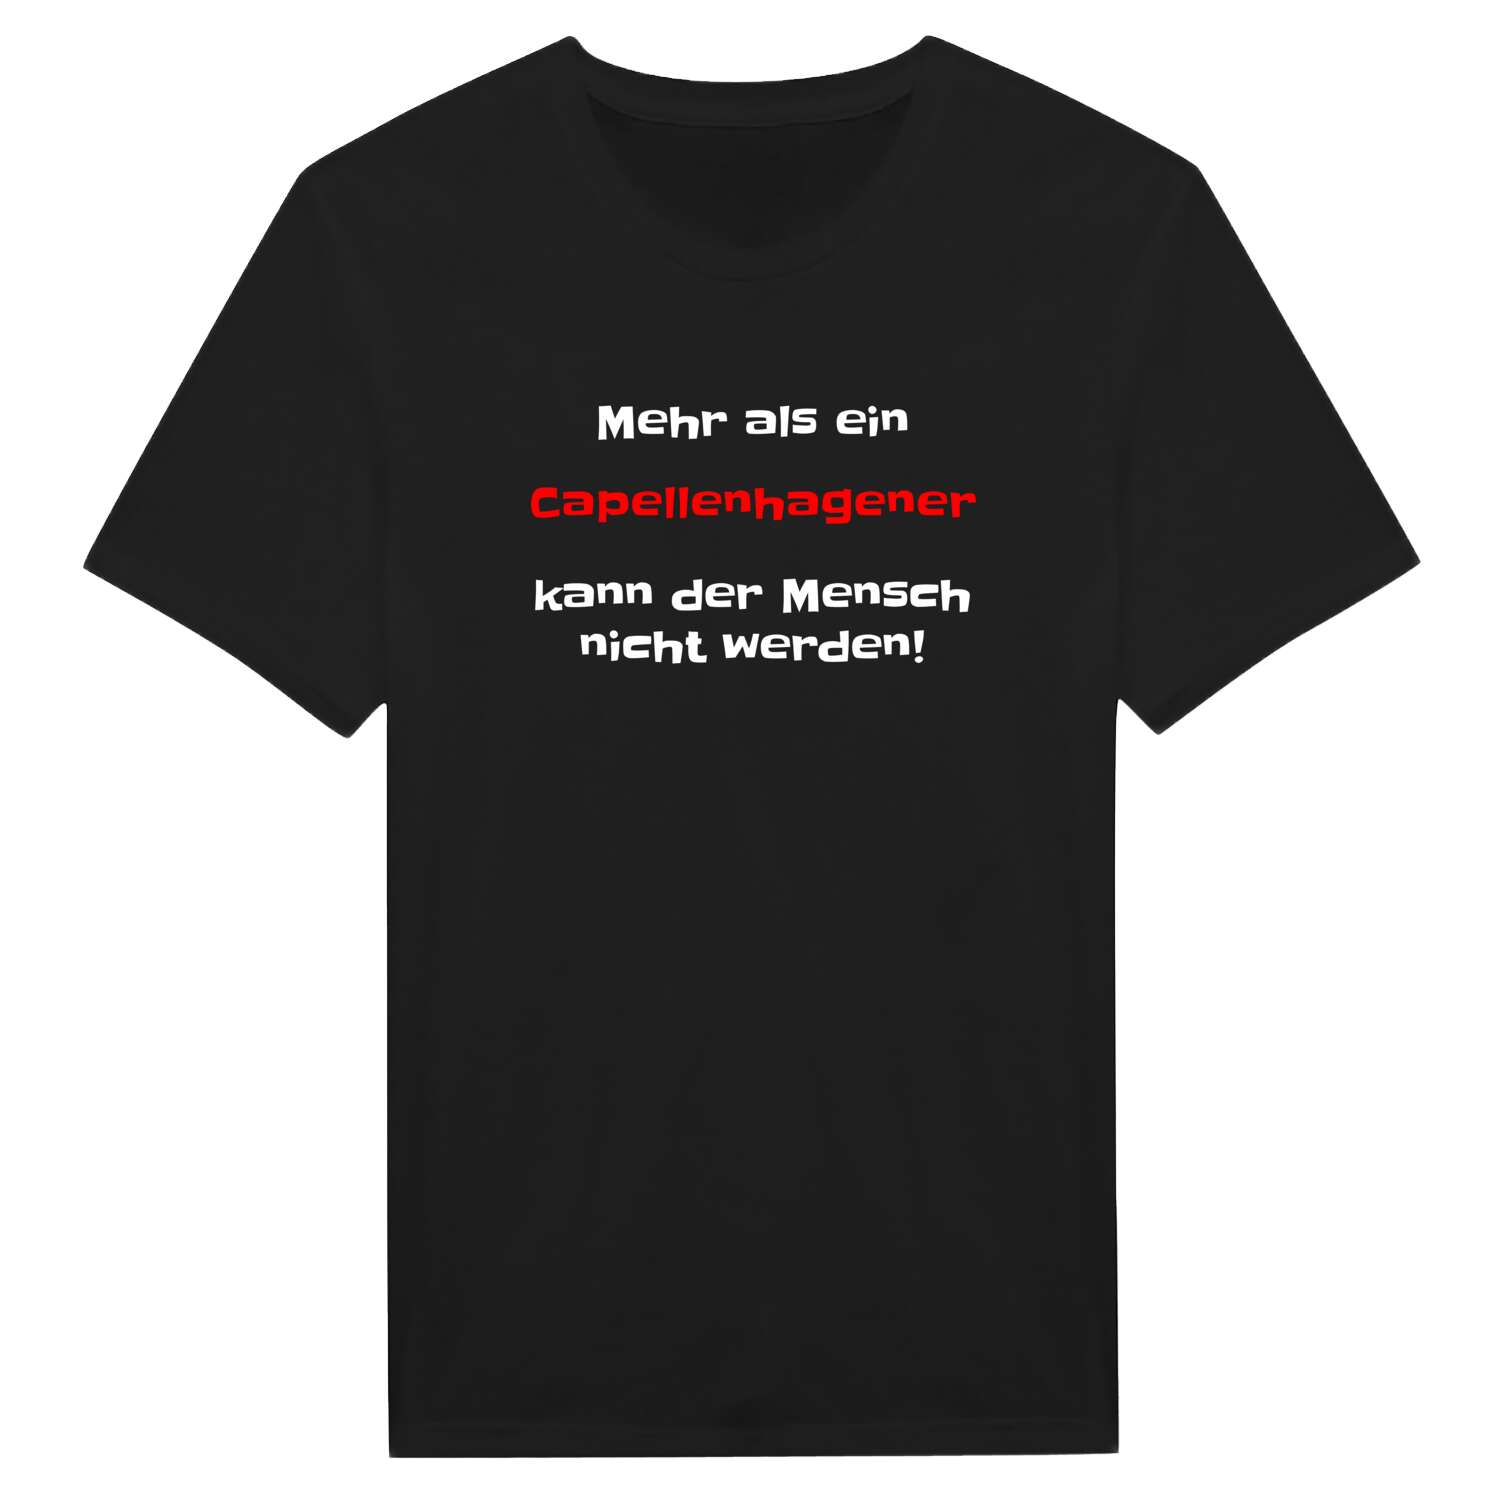 Capellenhagen T-Shirt »Mehr als ein«